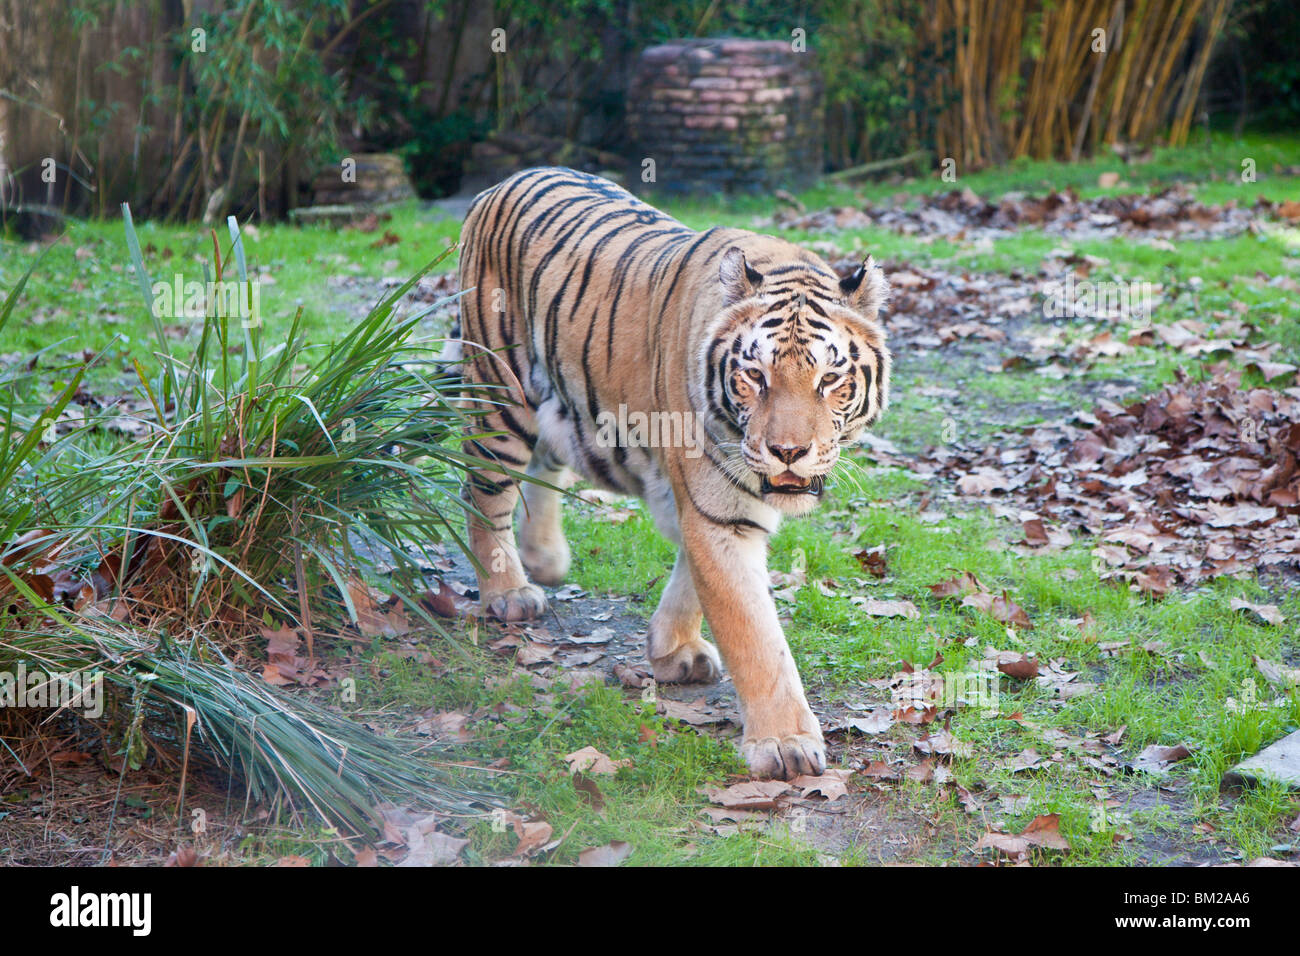 Orlando, FL - Jan 2009 - Asian tiger (Panthera tigris) paces in display at Disney's Animal Kingdom in Orlando Florida Stock Photo